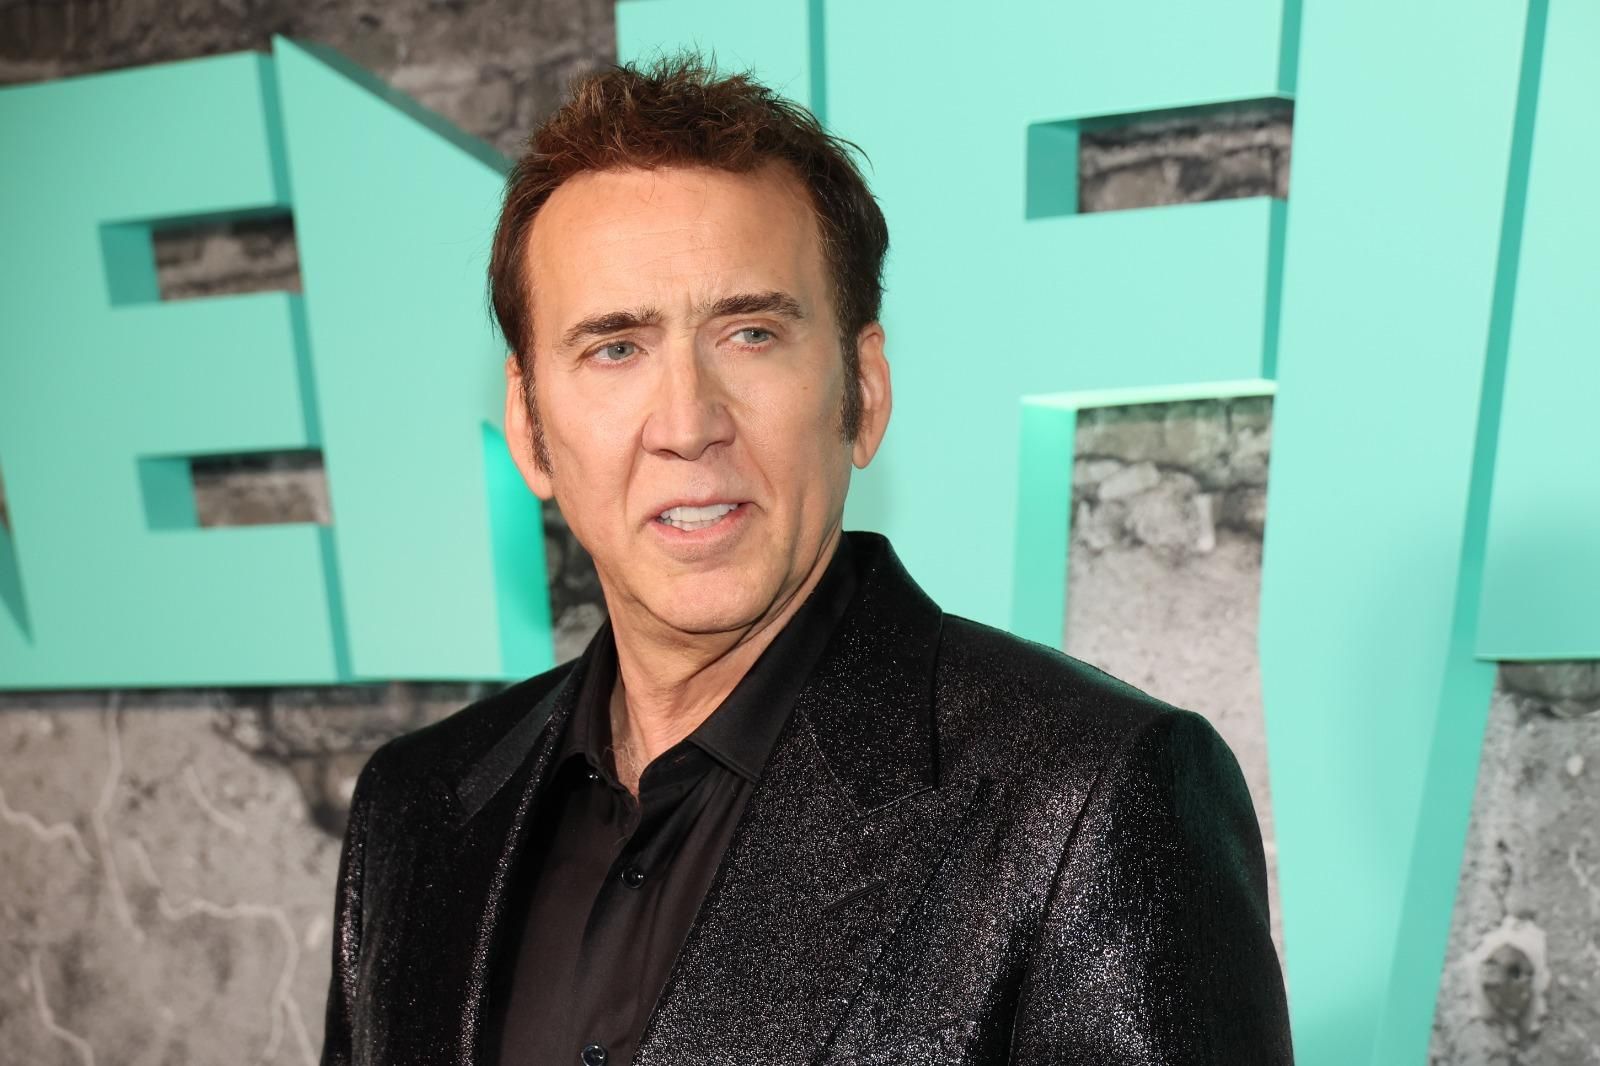 Filme que Nicolas Cage interpreta o Superman nunca saiu do papel